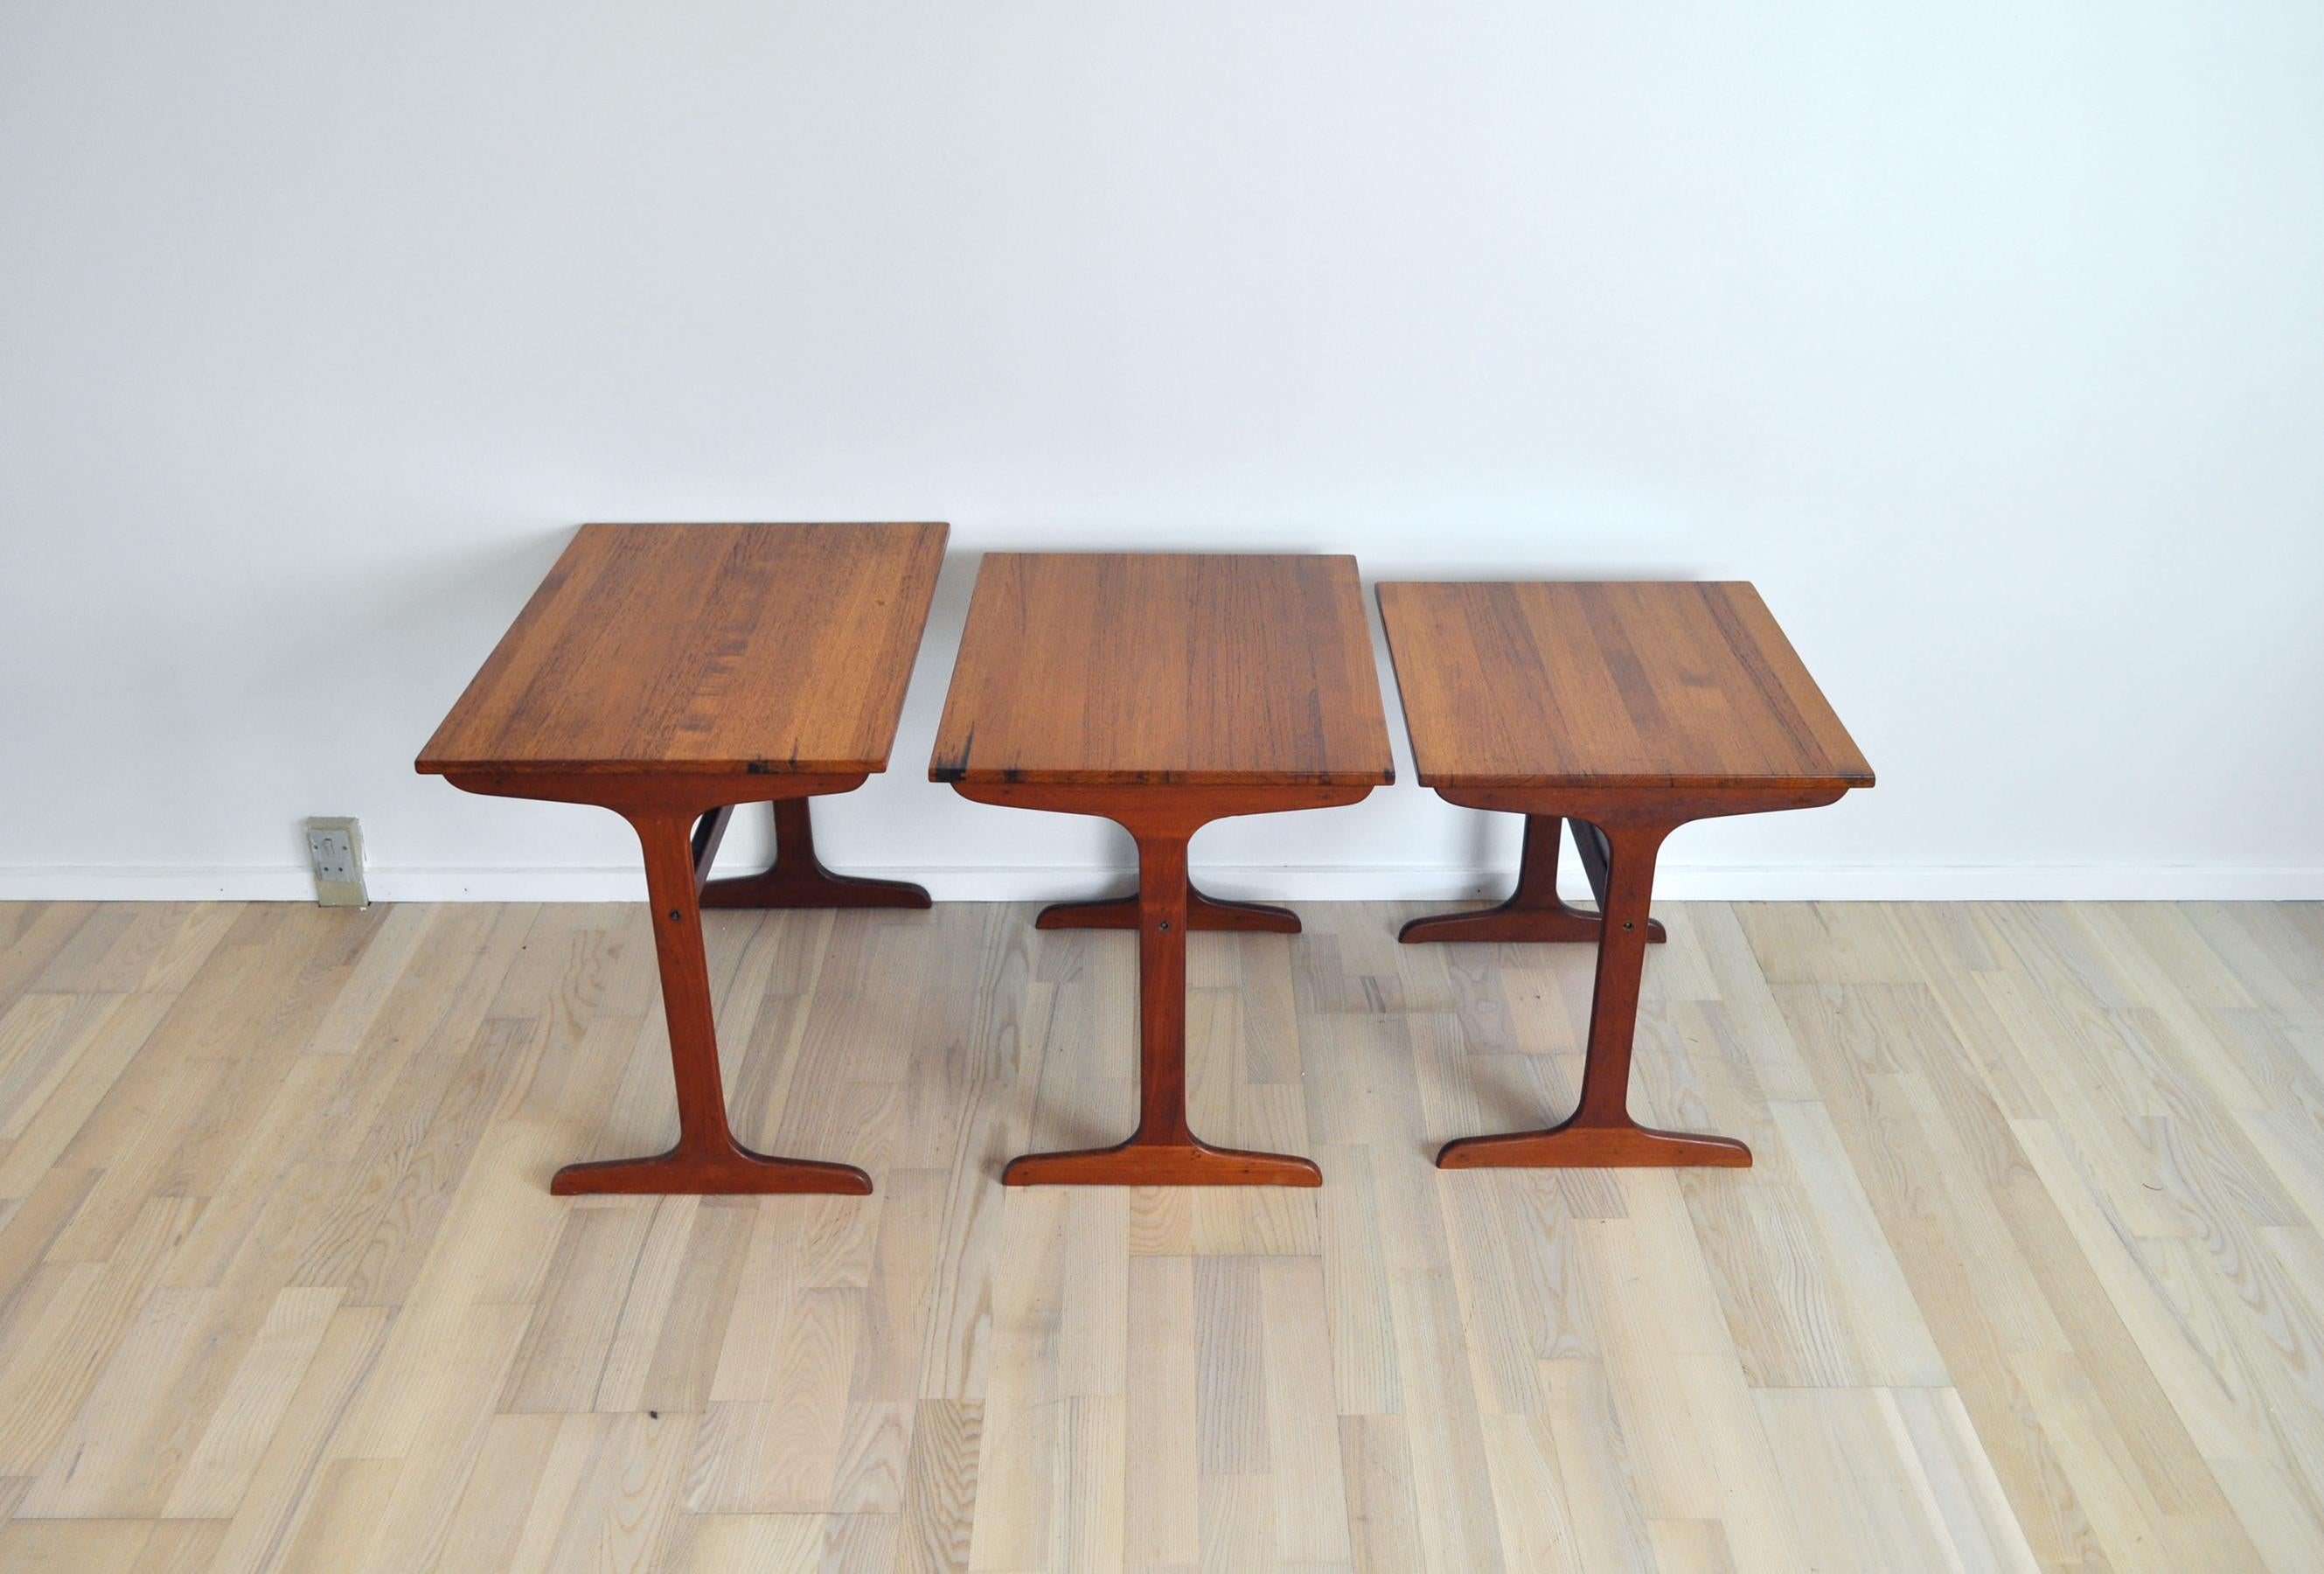 20th Century Scandinavian Modern Cabinetmaker Nesting Tables in Solid Teak, Denmark, 1960s For Sale